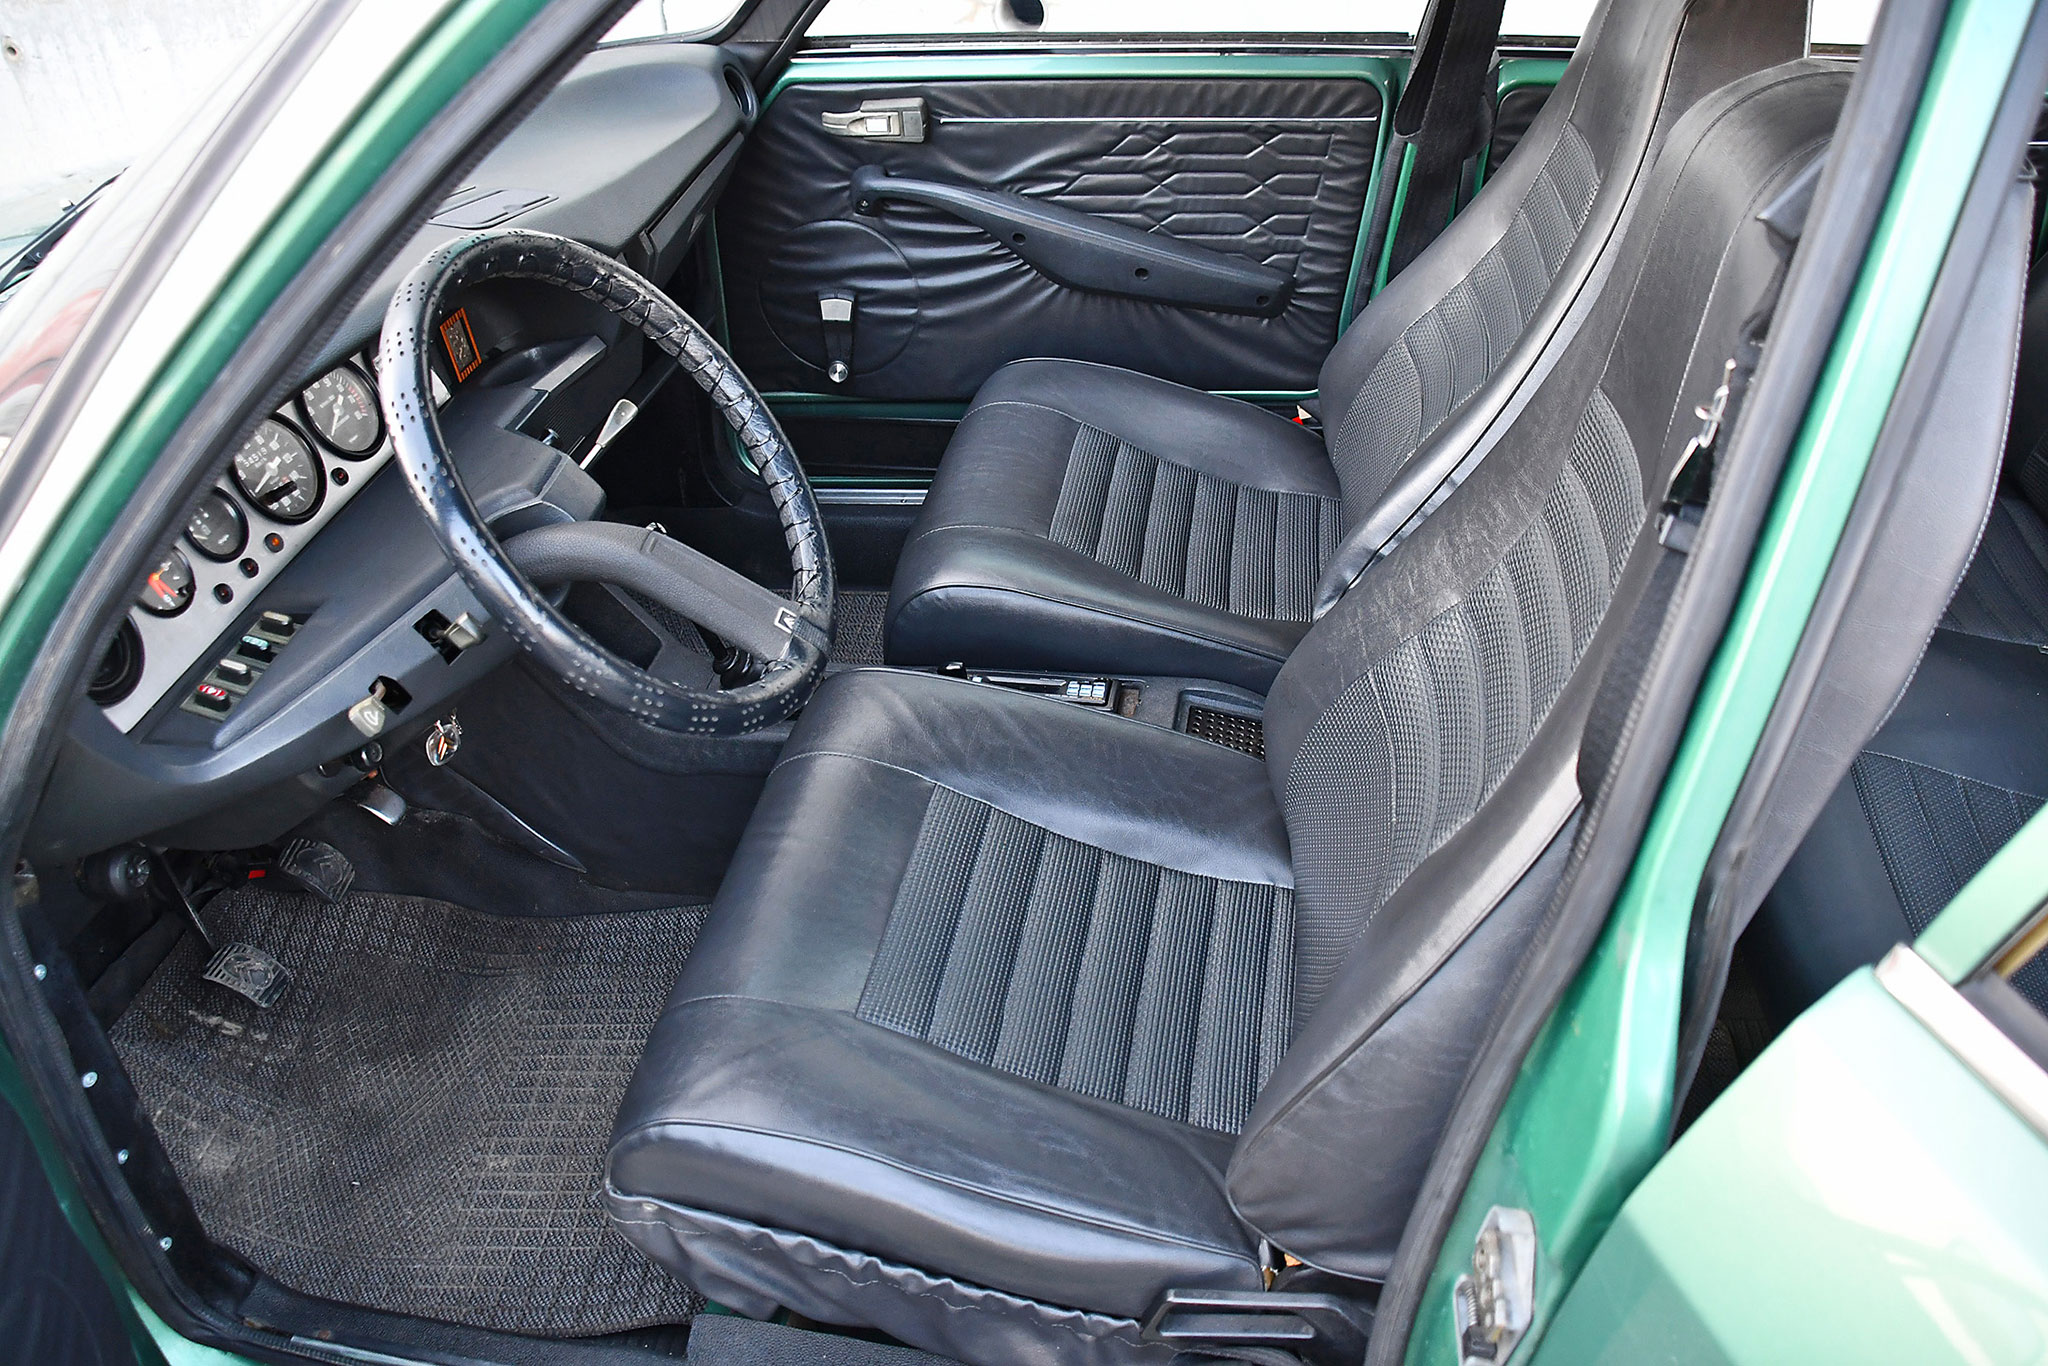 1975 Citroën GS X2 – intérieur entièrement refait et éléments techniques remis à jour.